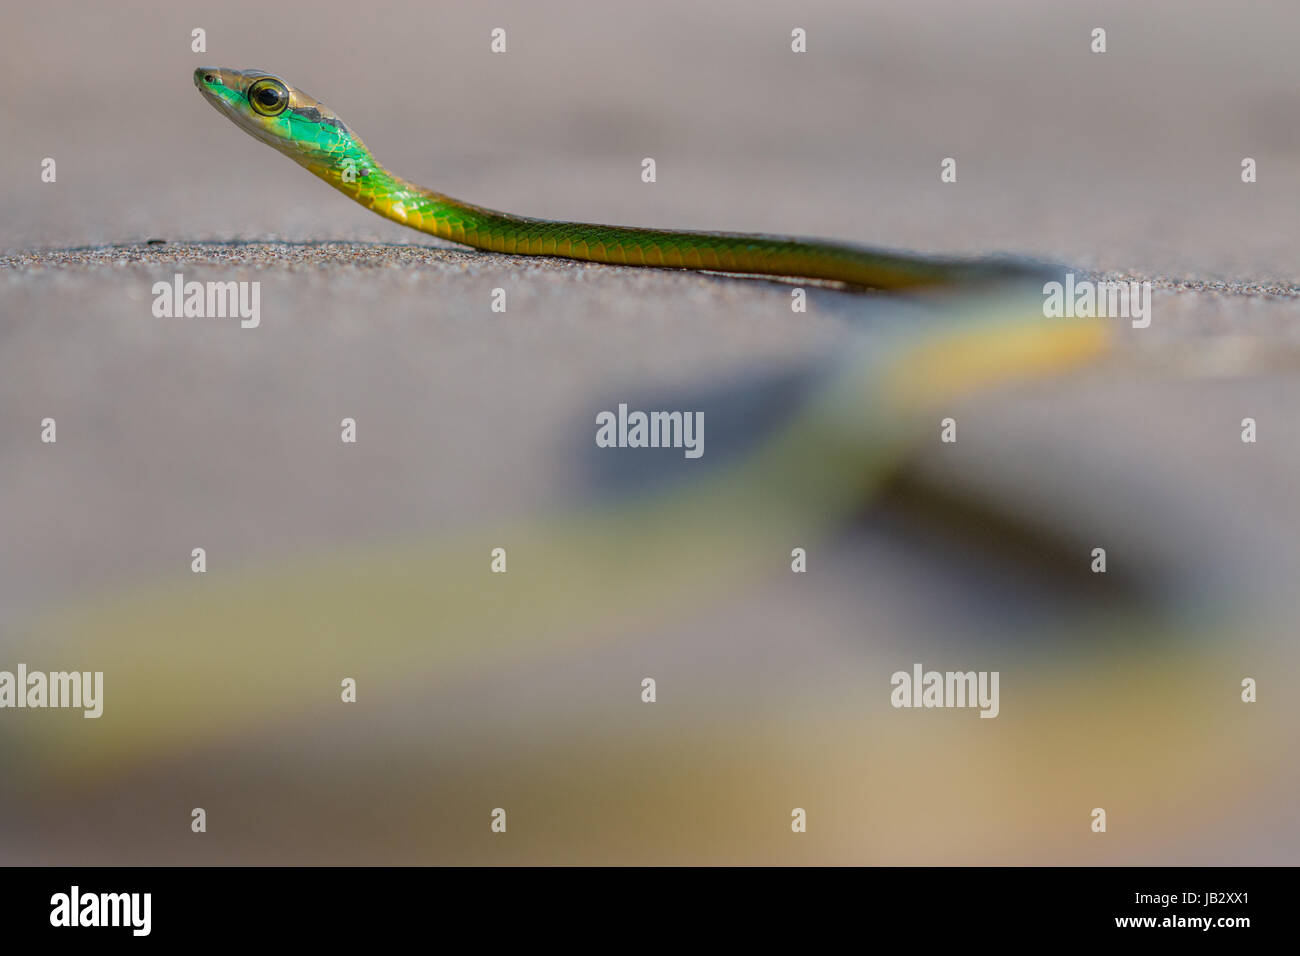 Schlangen der Gattung Leptophis sind schlank mit einem langen Schweif. Dieses Exemplar war für ein paar Minuten auf dem Sand des Strandes. Buenaventura, Valle del Cauc Stockfoto